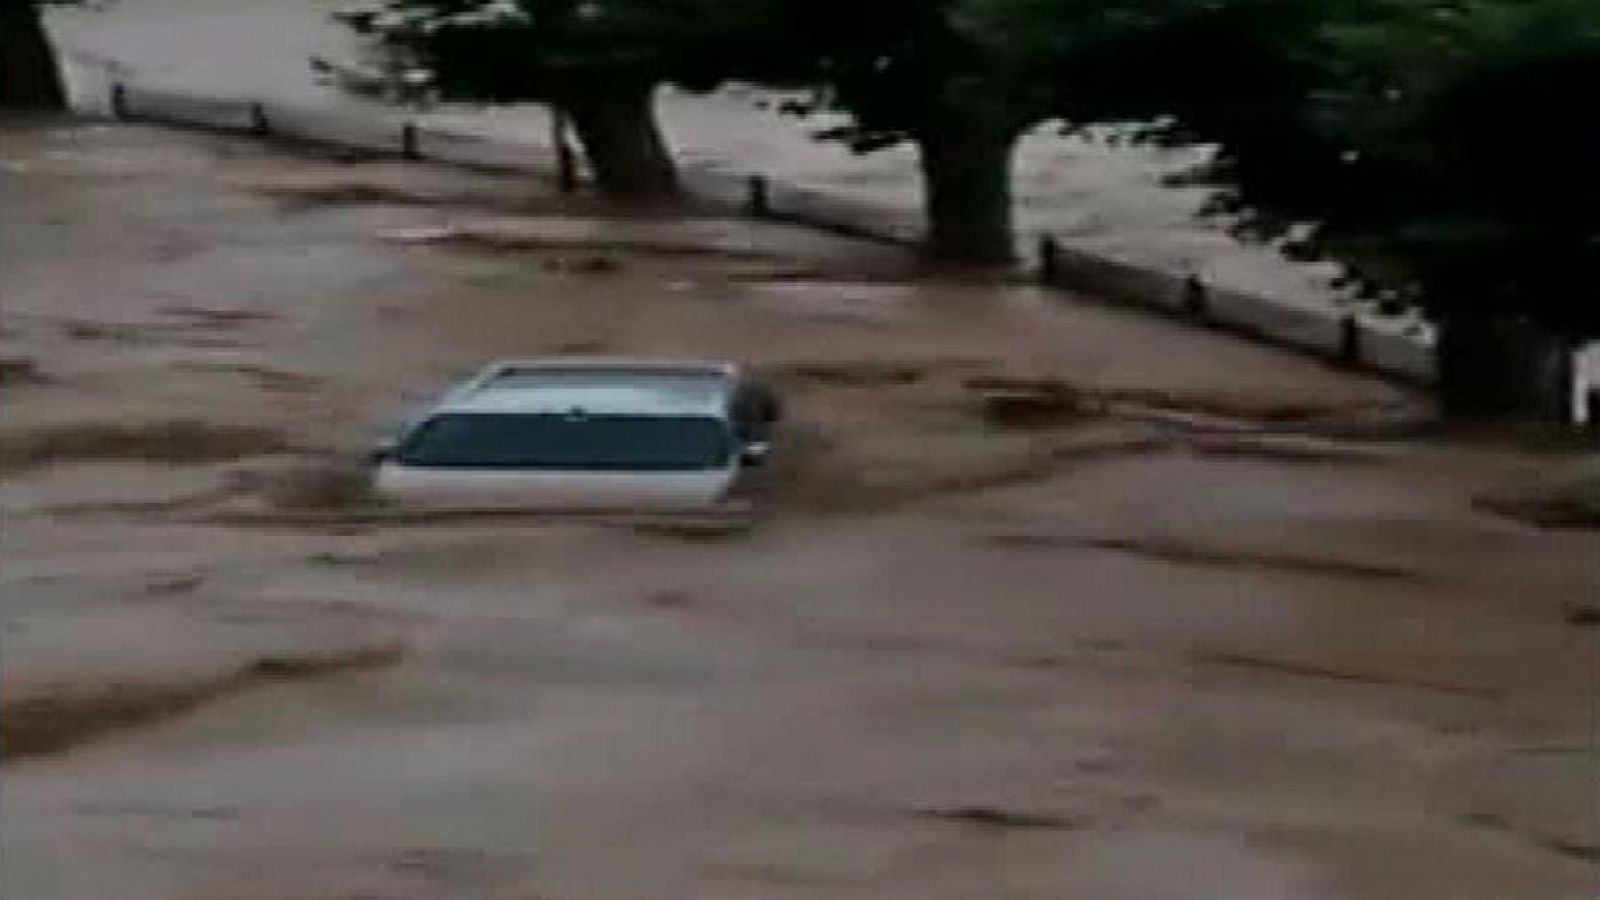 Inundaciones: Las inundaciones del río Cidacos provoca graves daños materiales en Navarra - RTVE.es